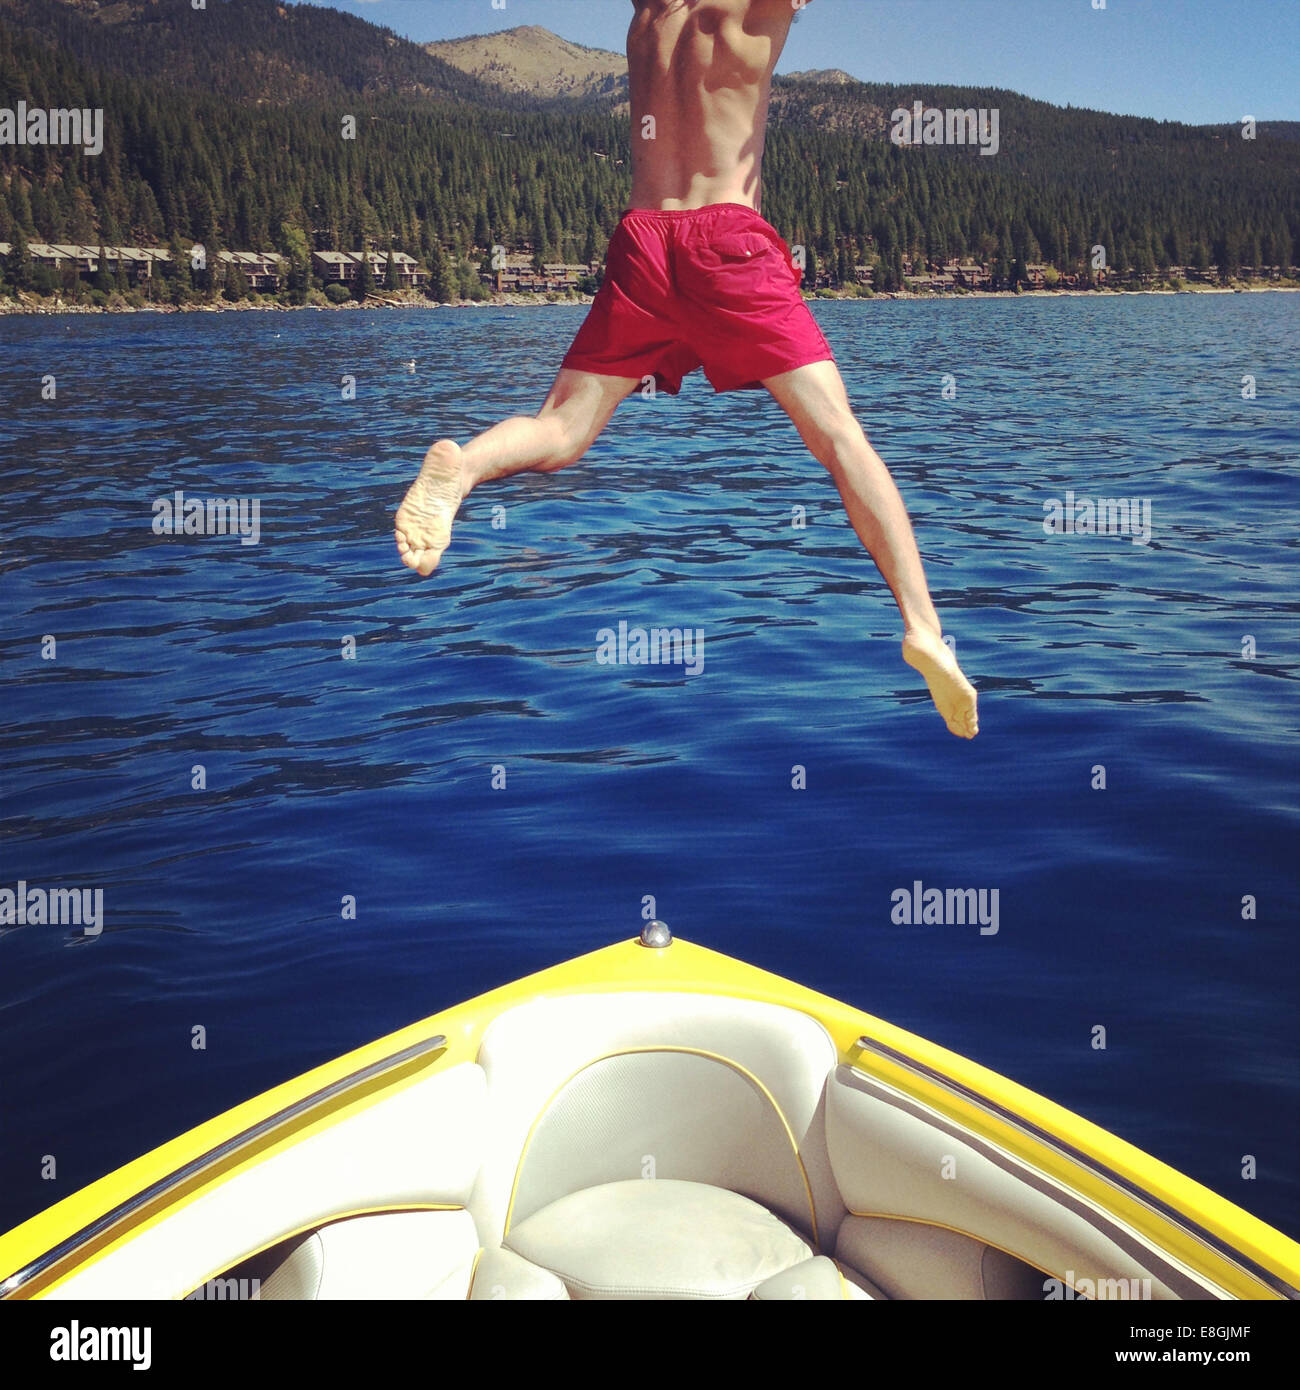 Mann springt vom Boot in einen See, Lake Tahoe, Kalifornien, USA Stockfoto